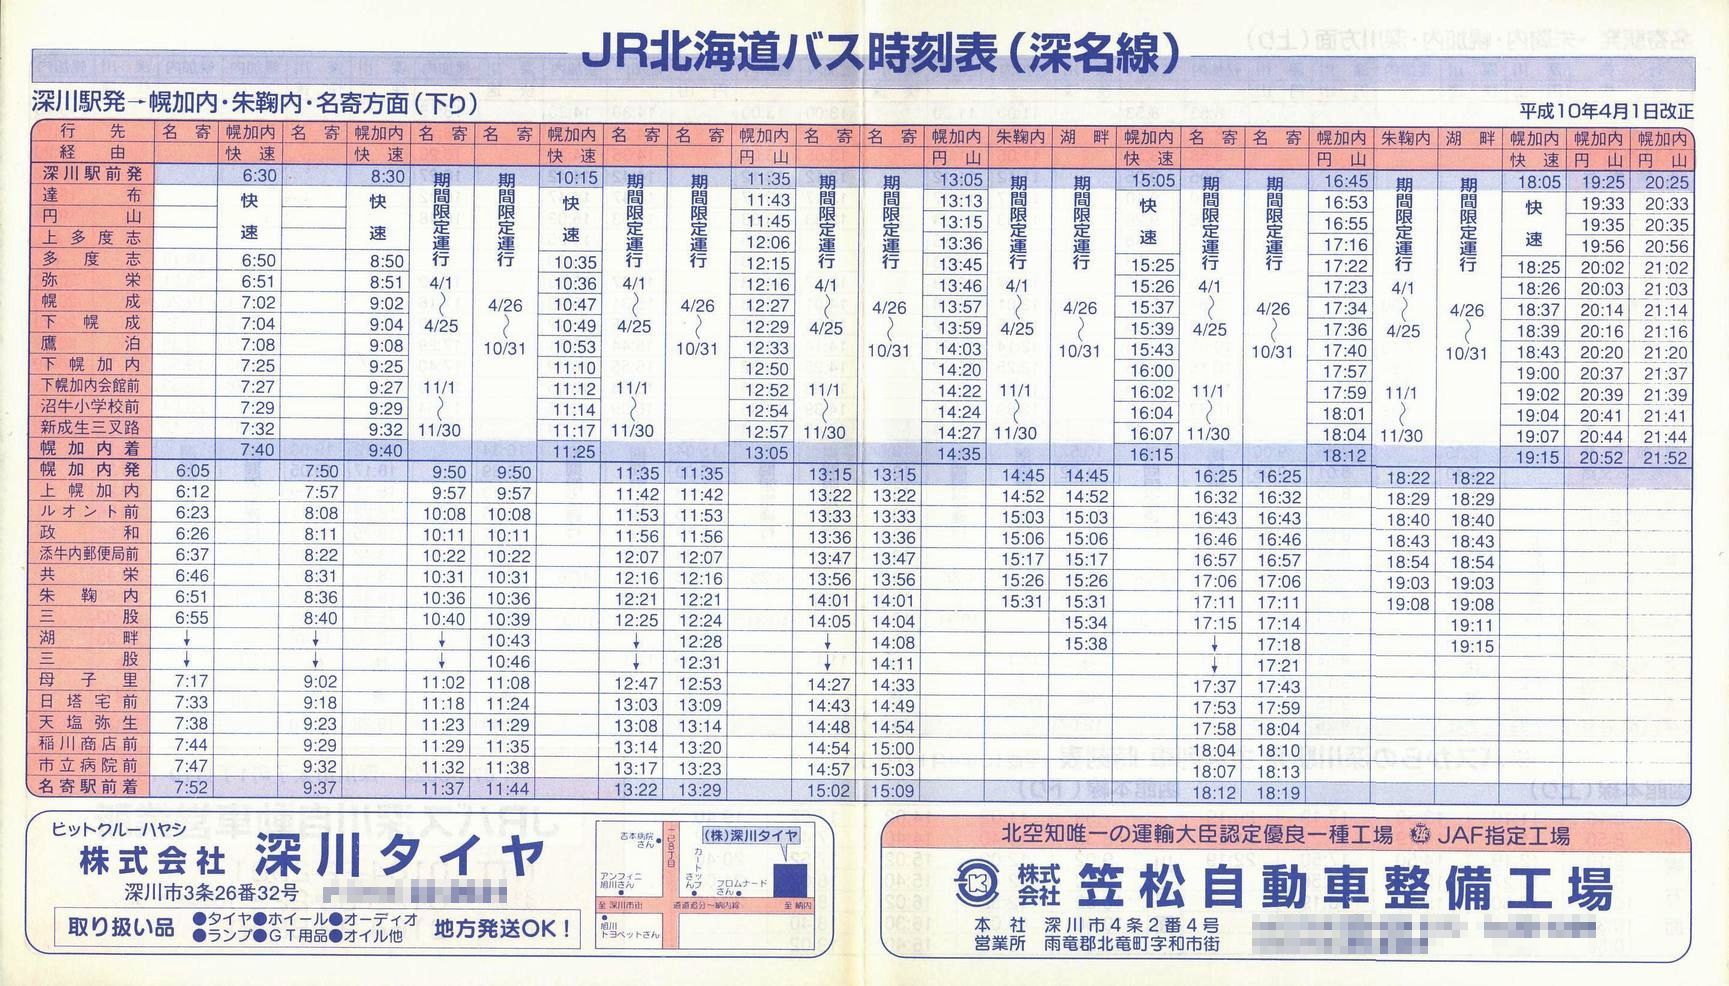 1998-04-01改正_ＪＲ北海道バス_深名線時刻表表面